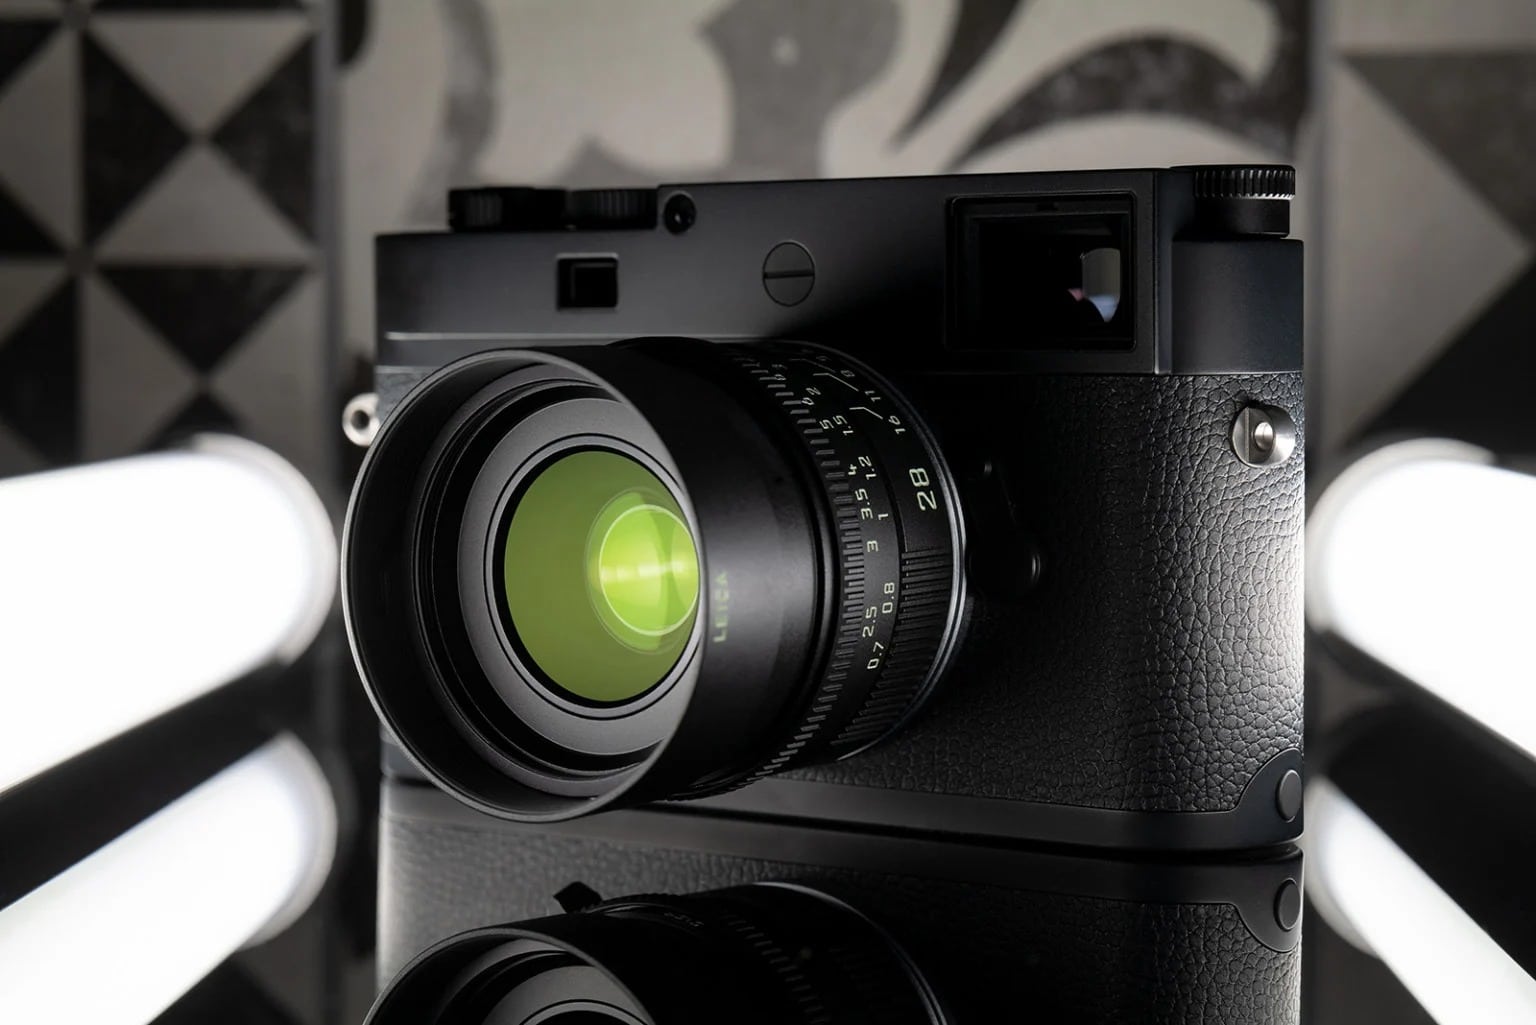 Leica ra mắt ống kính Summicron-M 28mm F2 bản giới hạn đặc biệt màu đen nhám